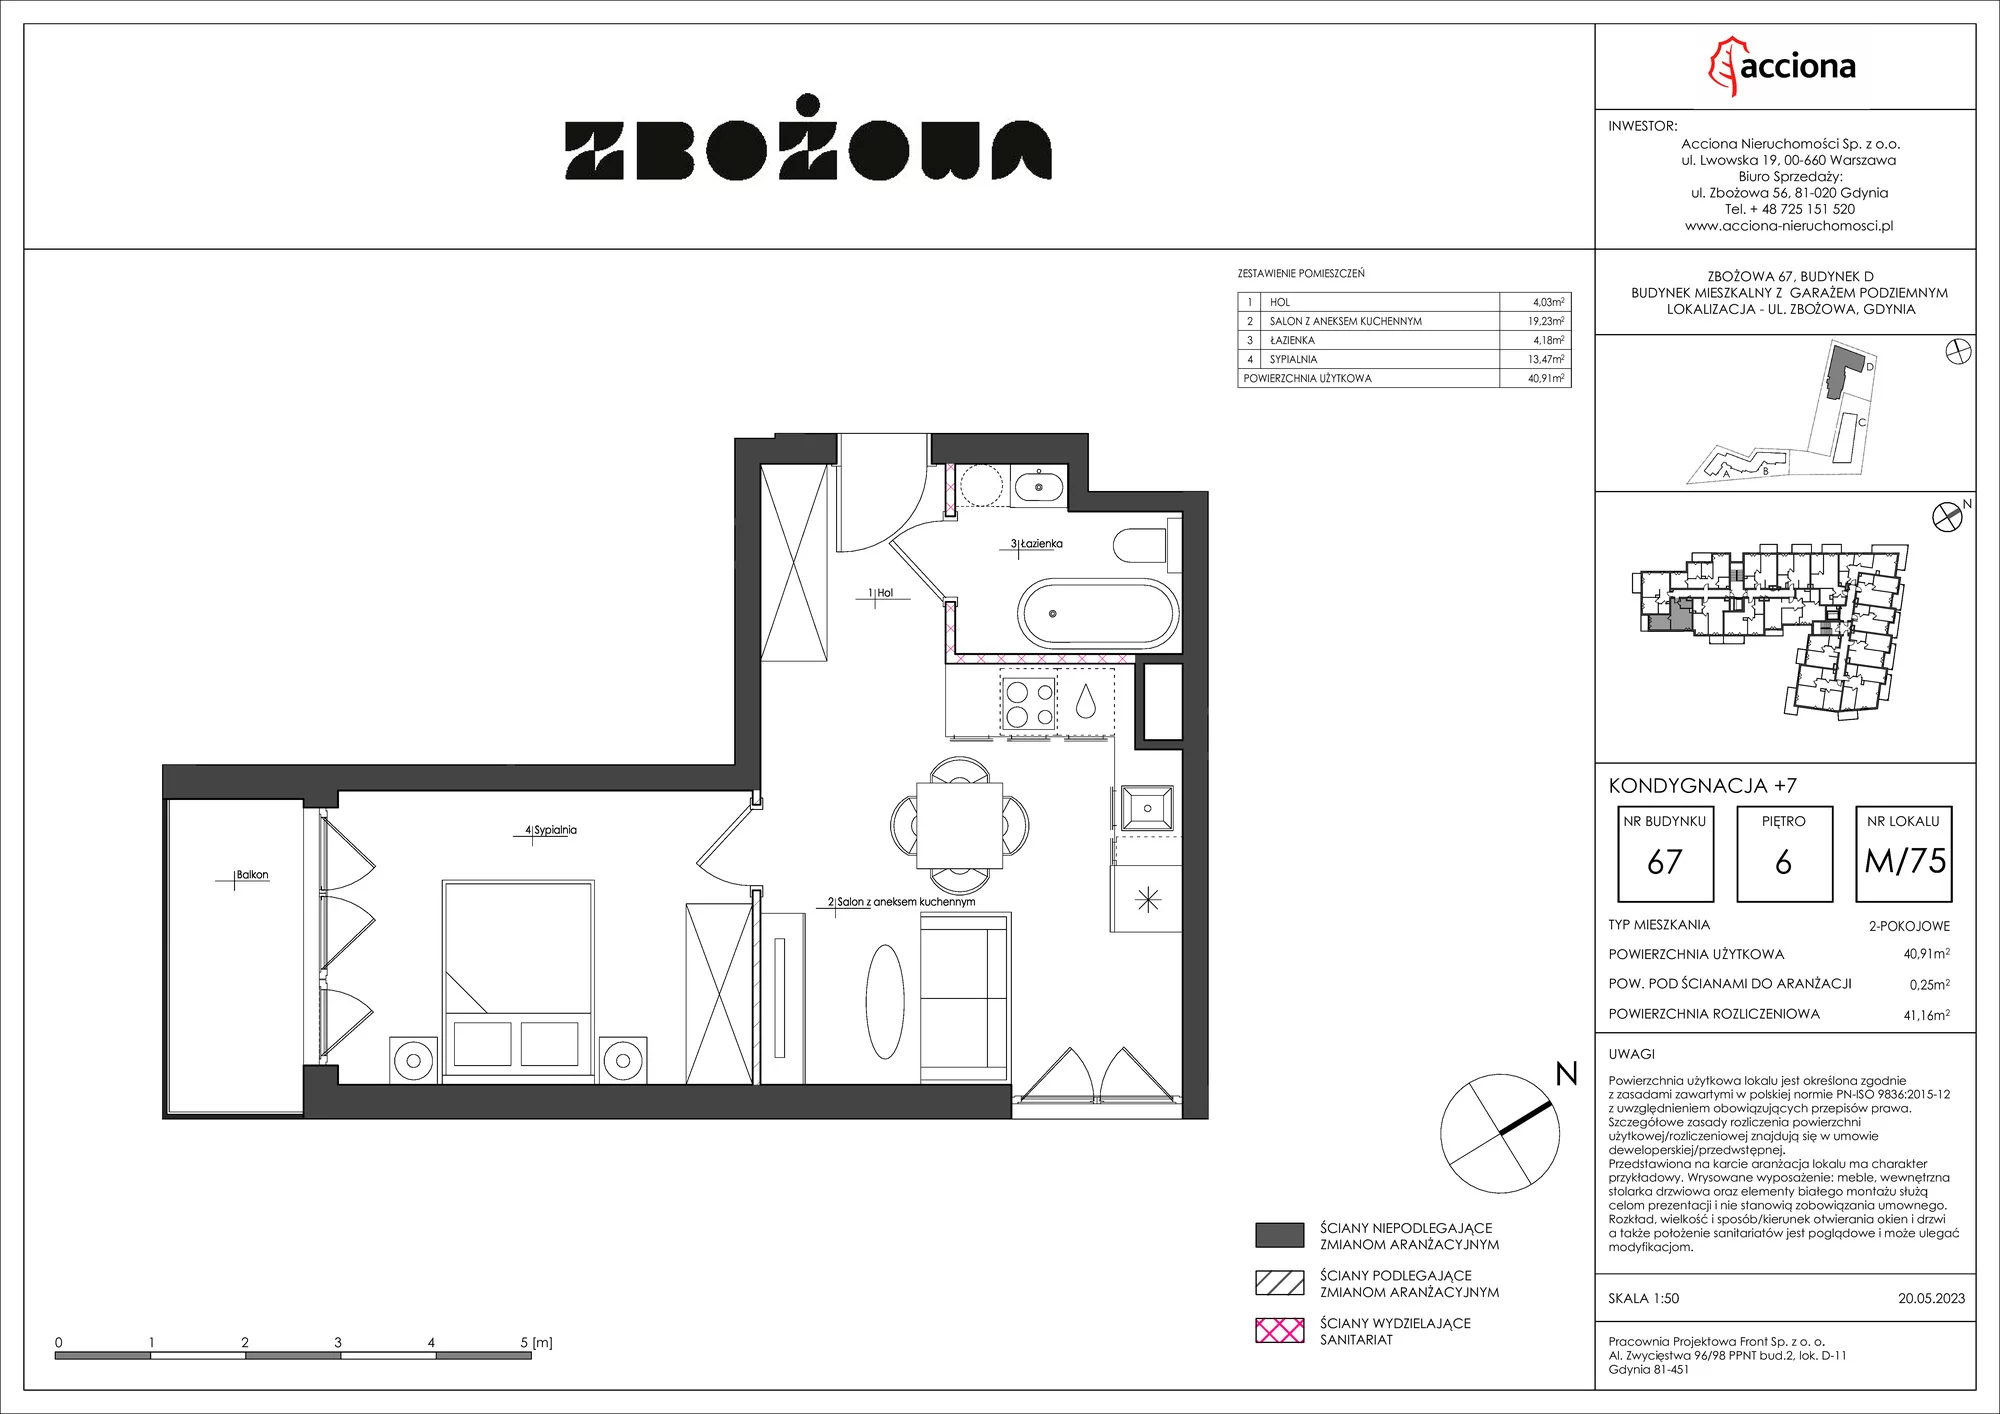 Mieszkanie 41,16 m², piętro 6, oferta nr 67.75, Zbożowa, Gdynia, Cisowa, ul. Zbożowa